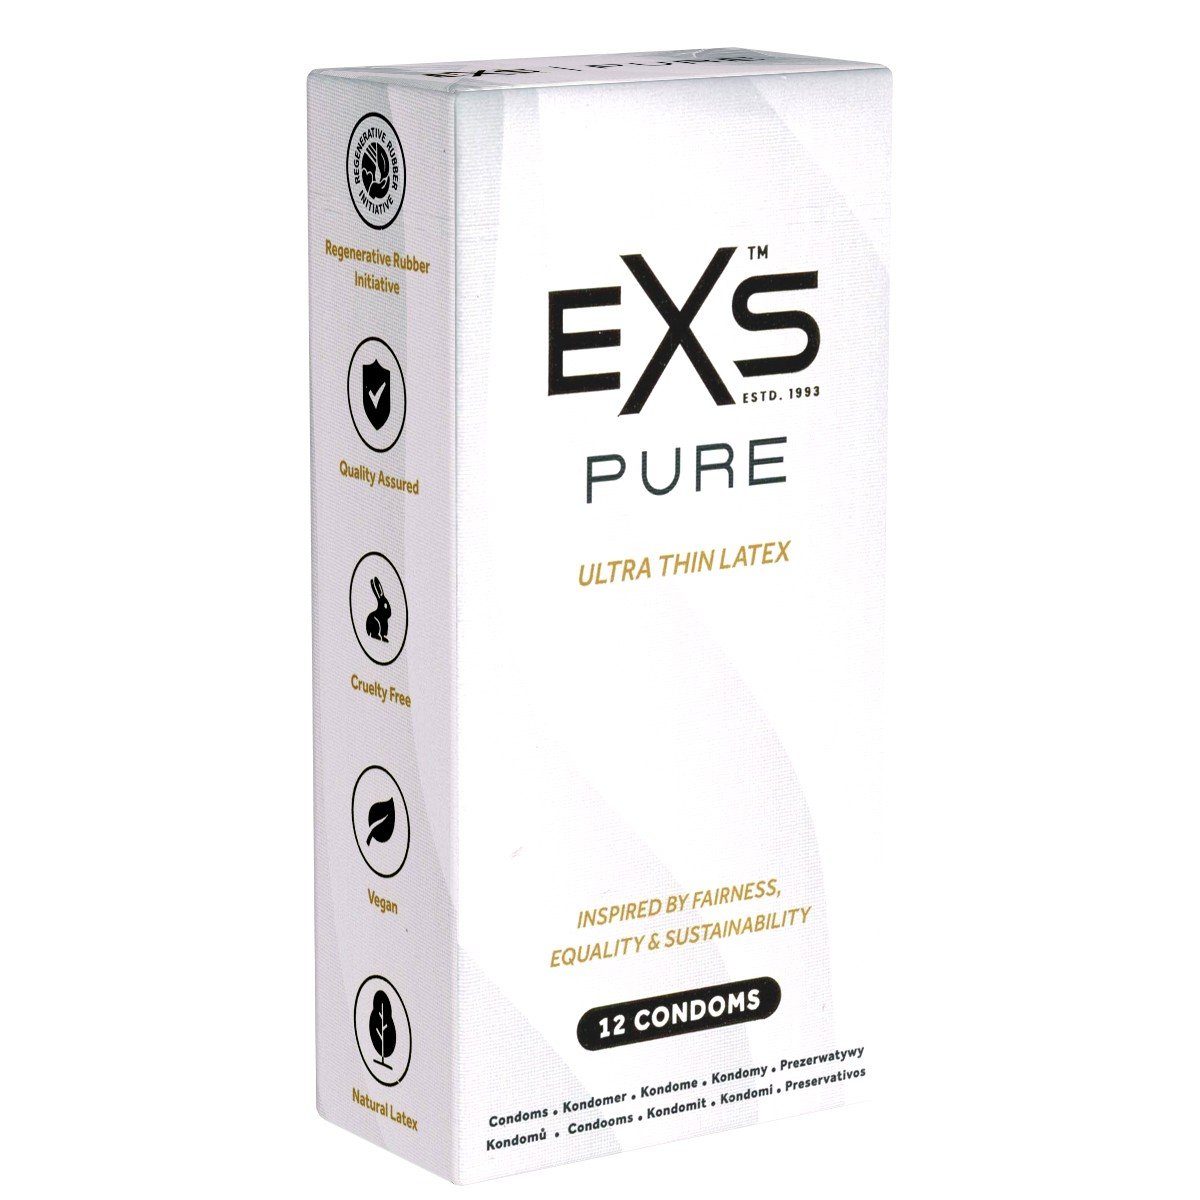 EXS Kondome Pure - Latex dünne, aus nachhaltige mit, vegane Kondome Fair St., umweltfreundlicher Packung Kondome, Kondome Verpackung Trade -, mit 12